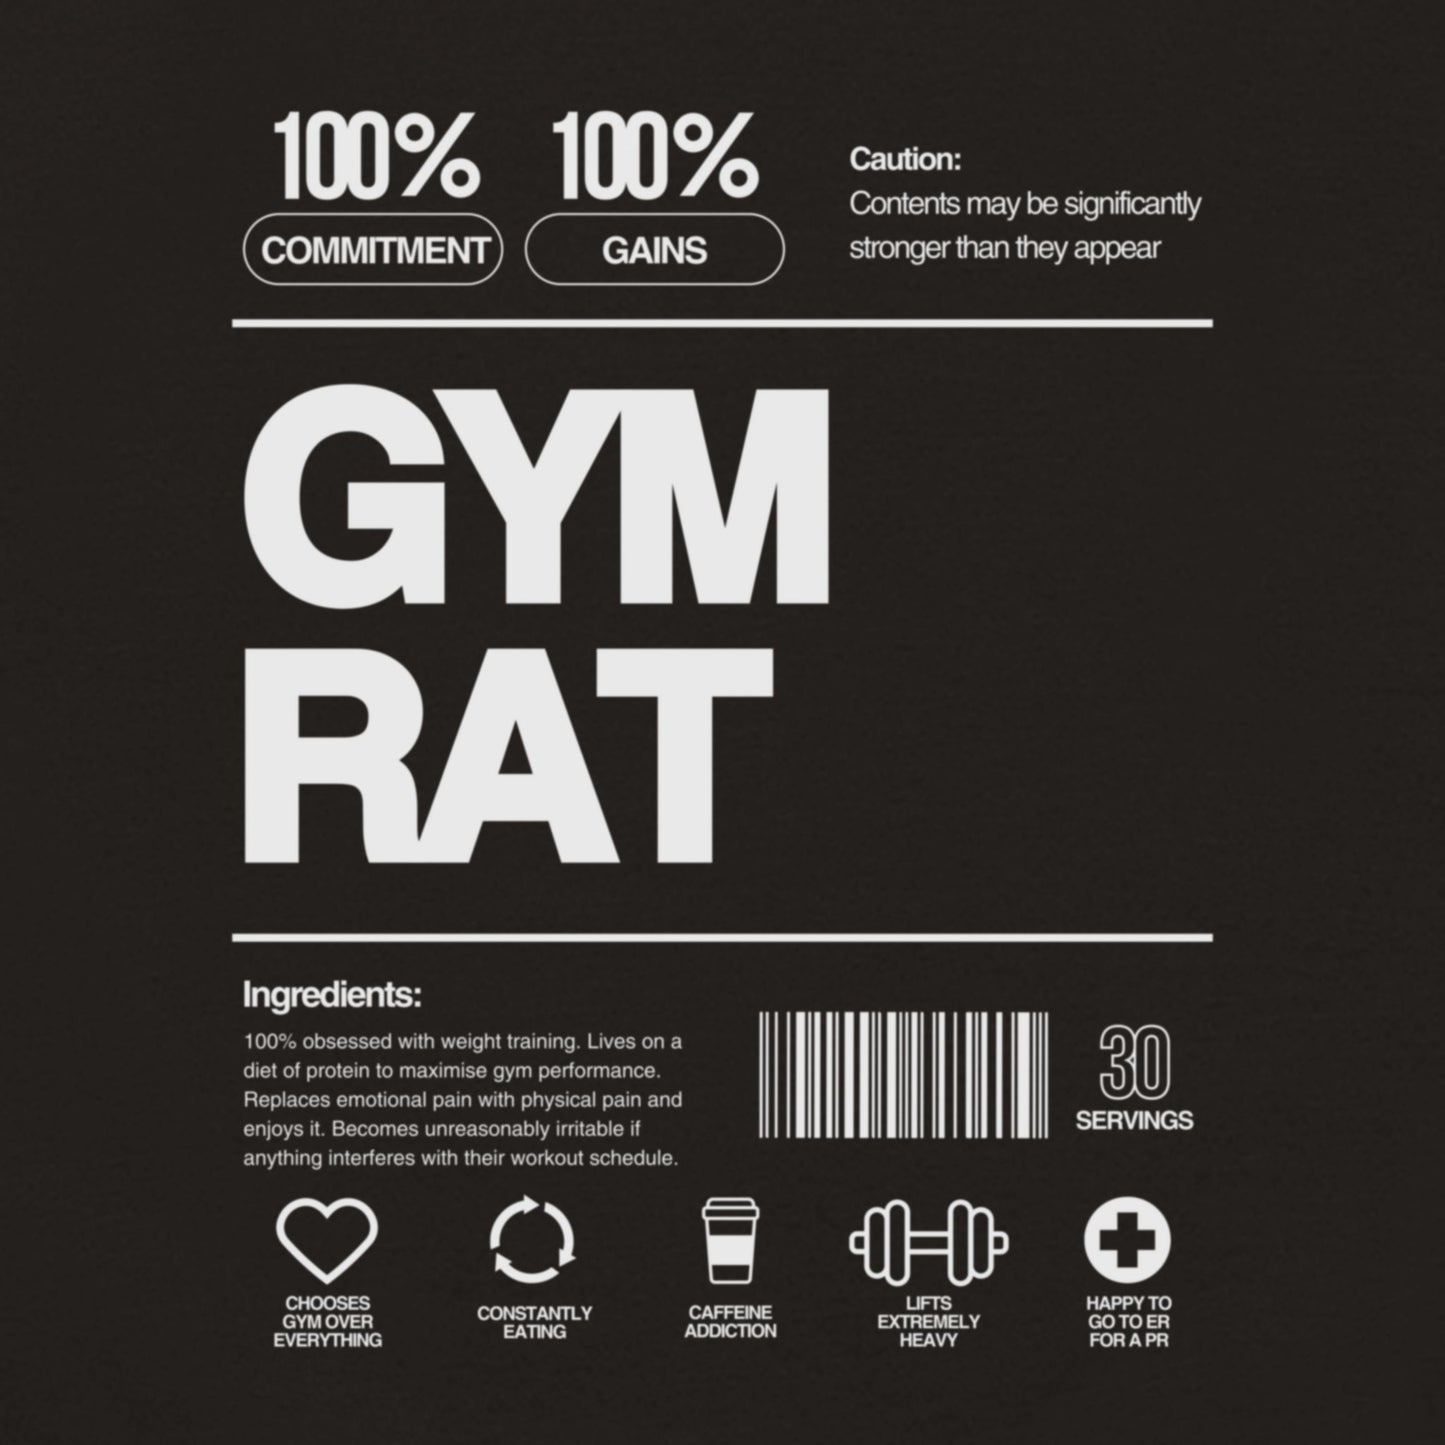 Gym Rat Hoodie Black